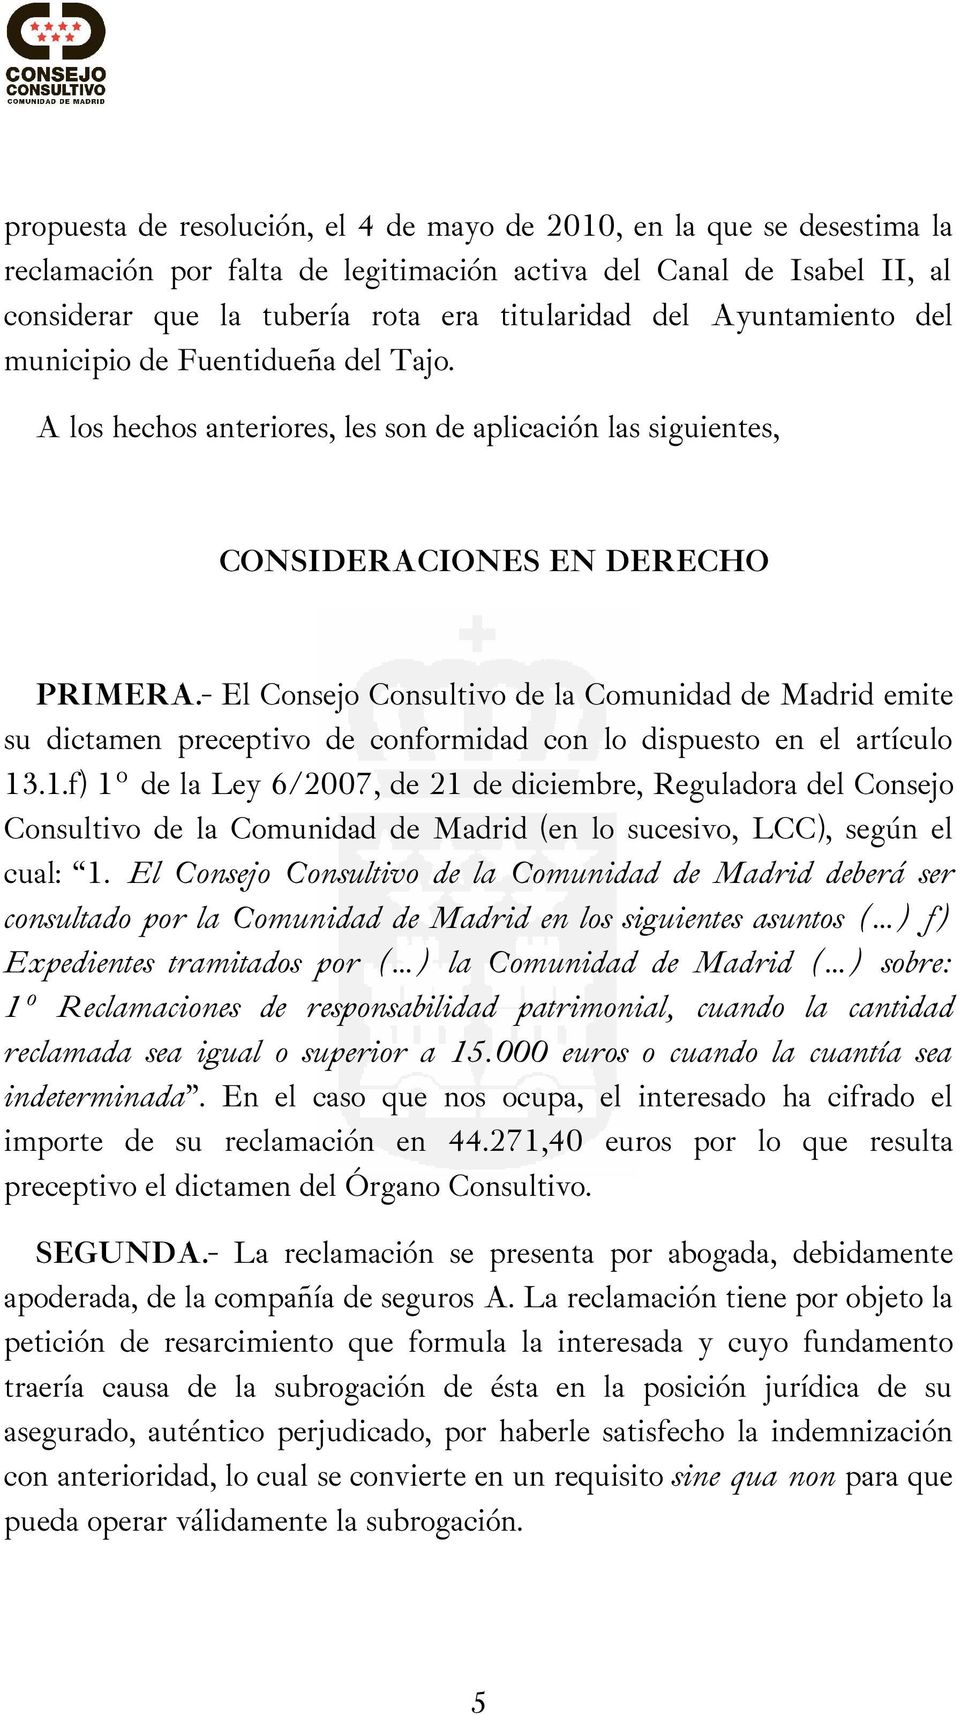 - El Consejo Consultivo de la Comunidad de Madrid emite su dictamen preceptivo de conformidad con lo dispuesto en el artículo 13